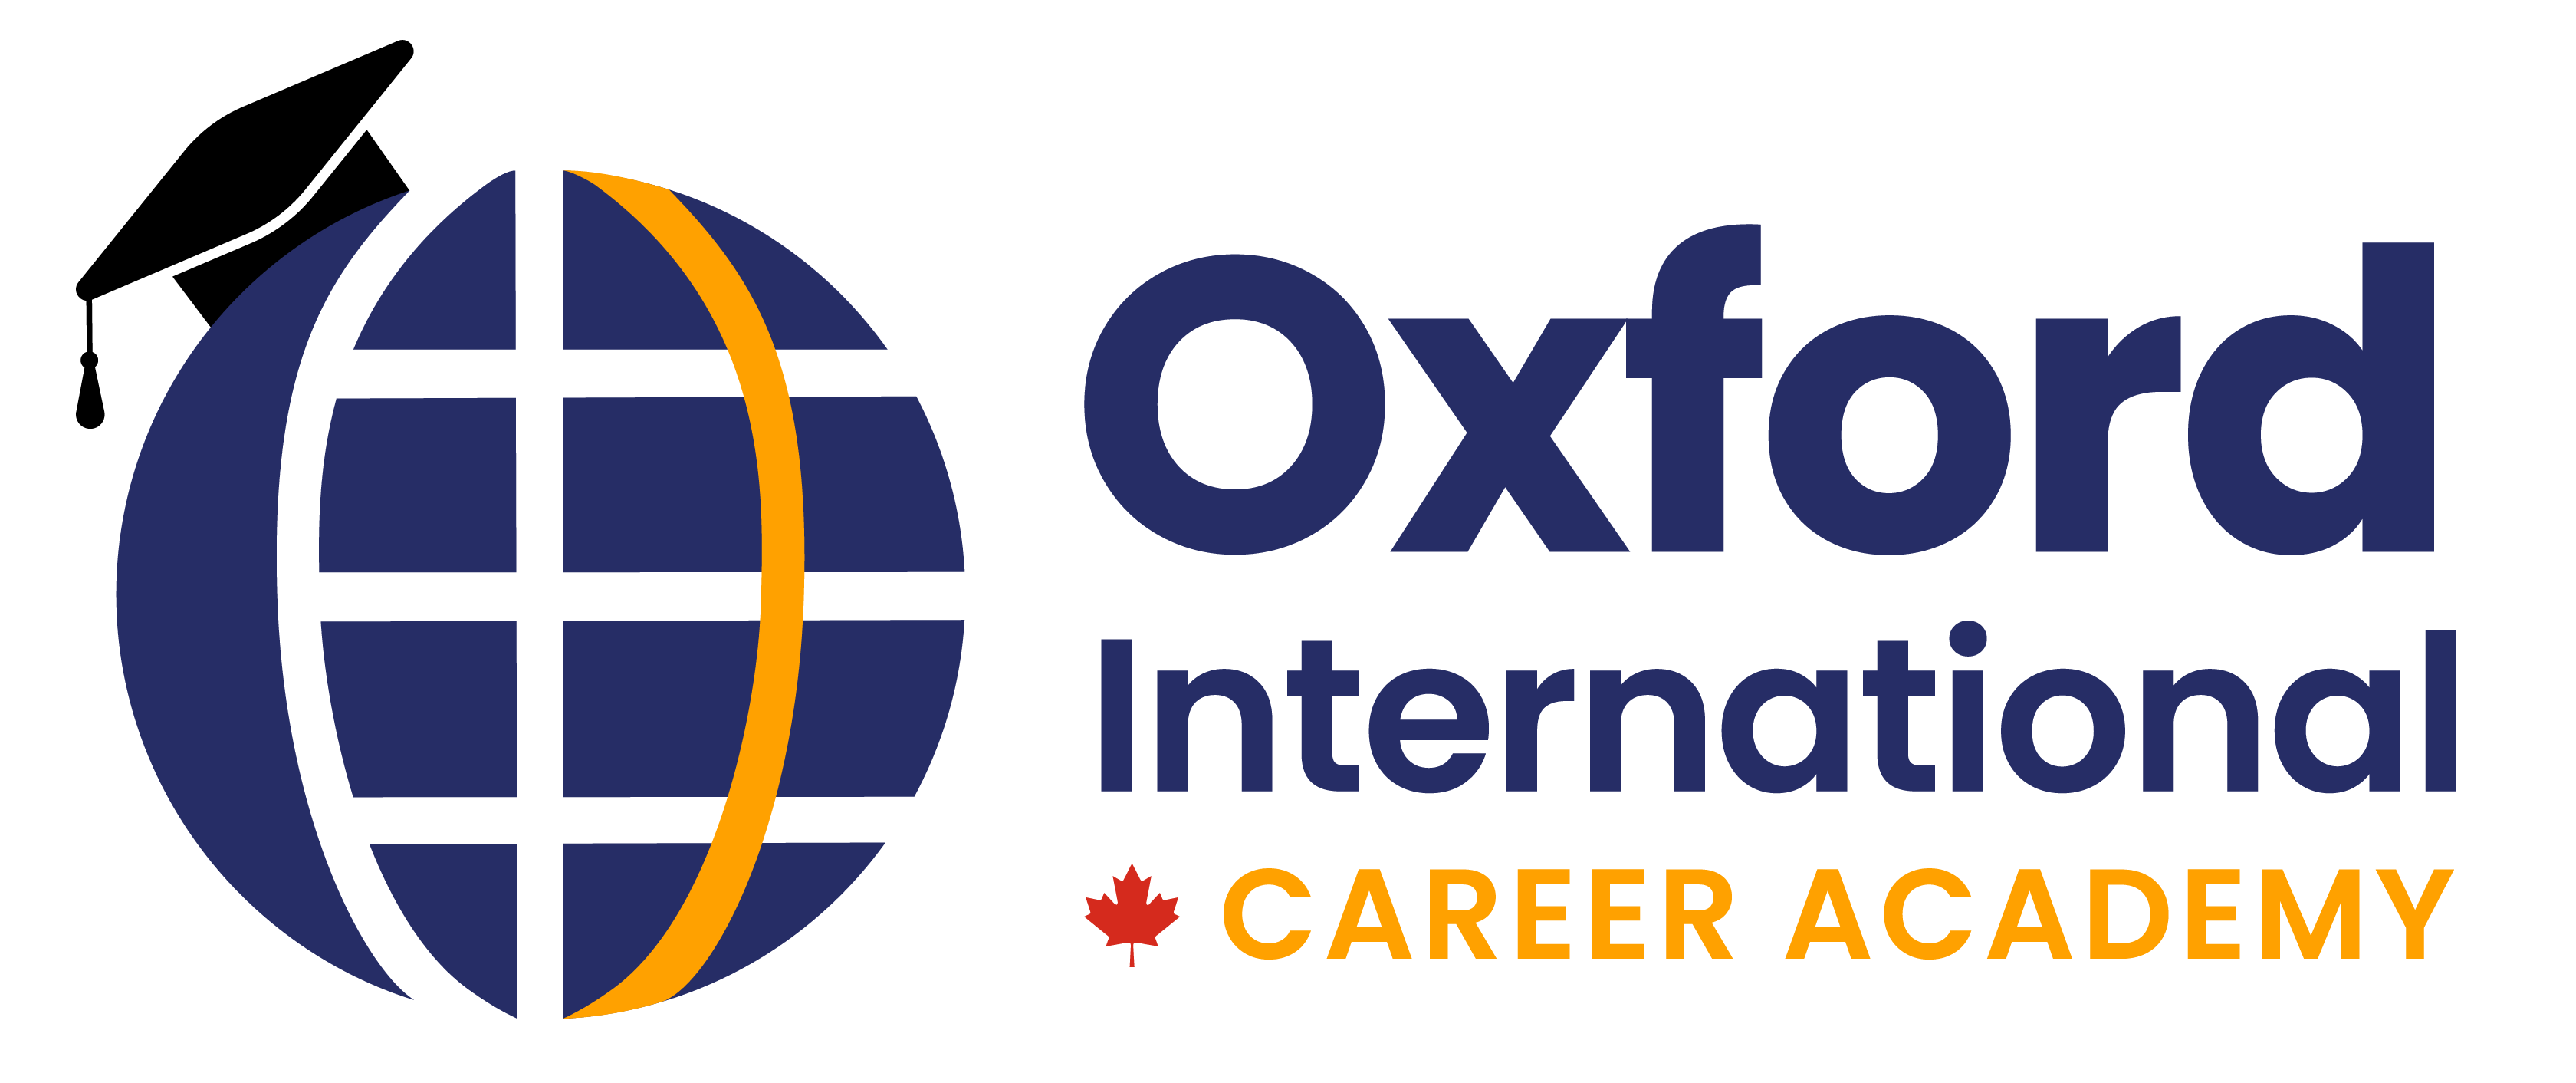 Career Academy Canada logo